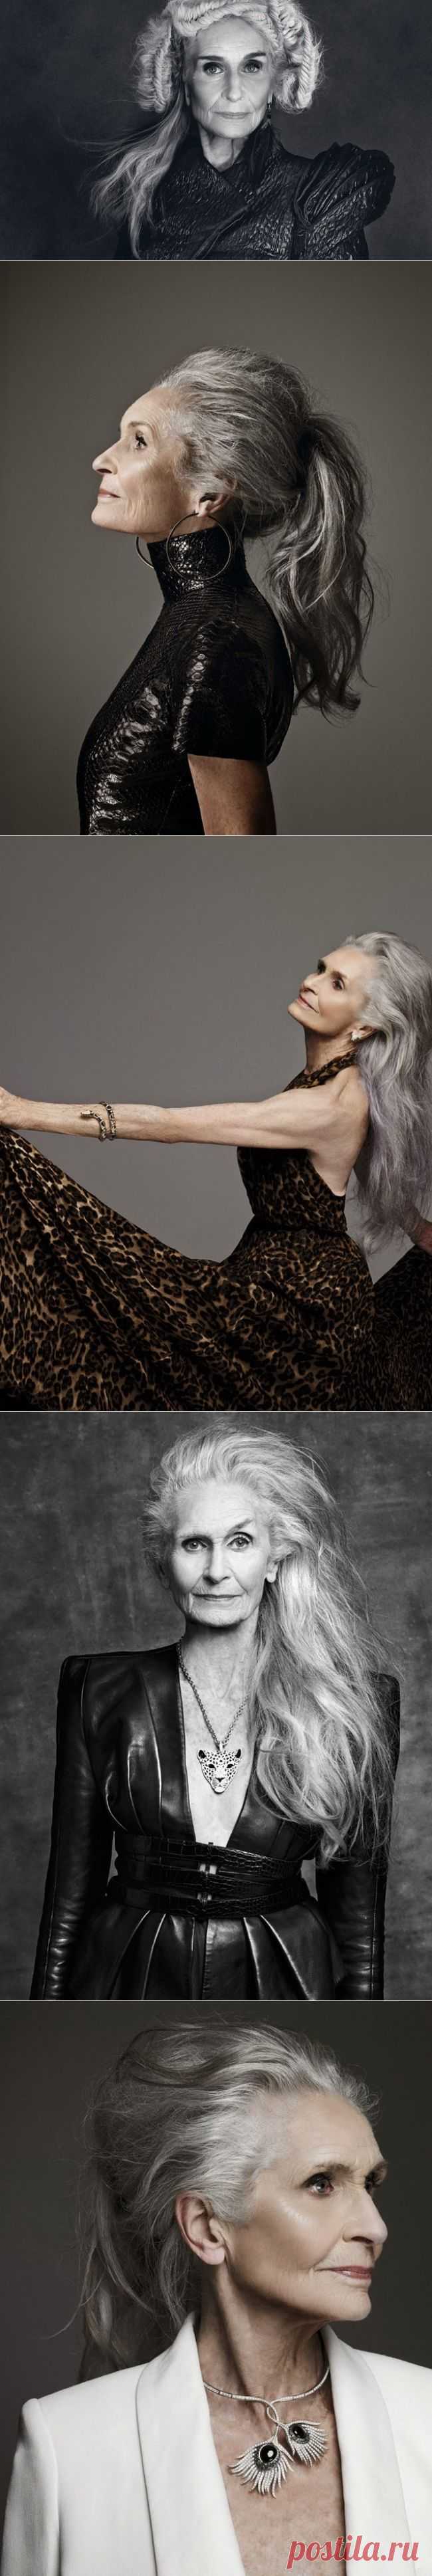 Эта женщина восхитительна в свои 86 лет